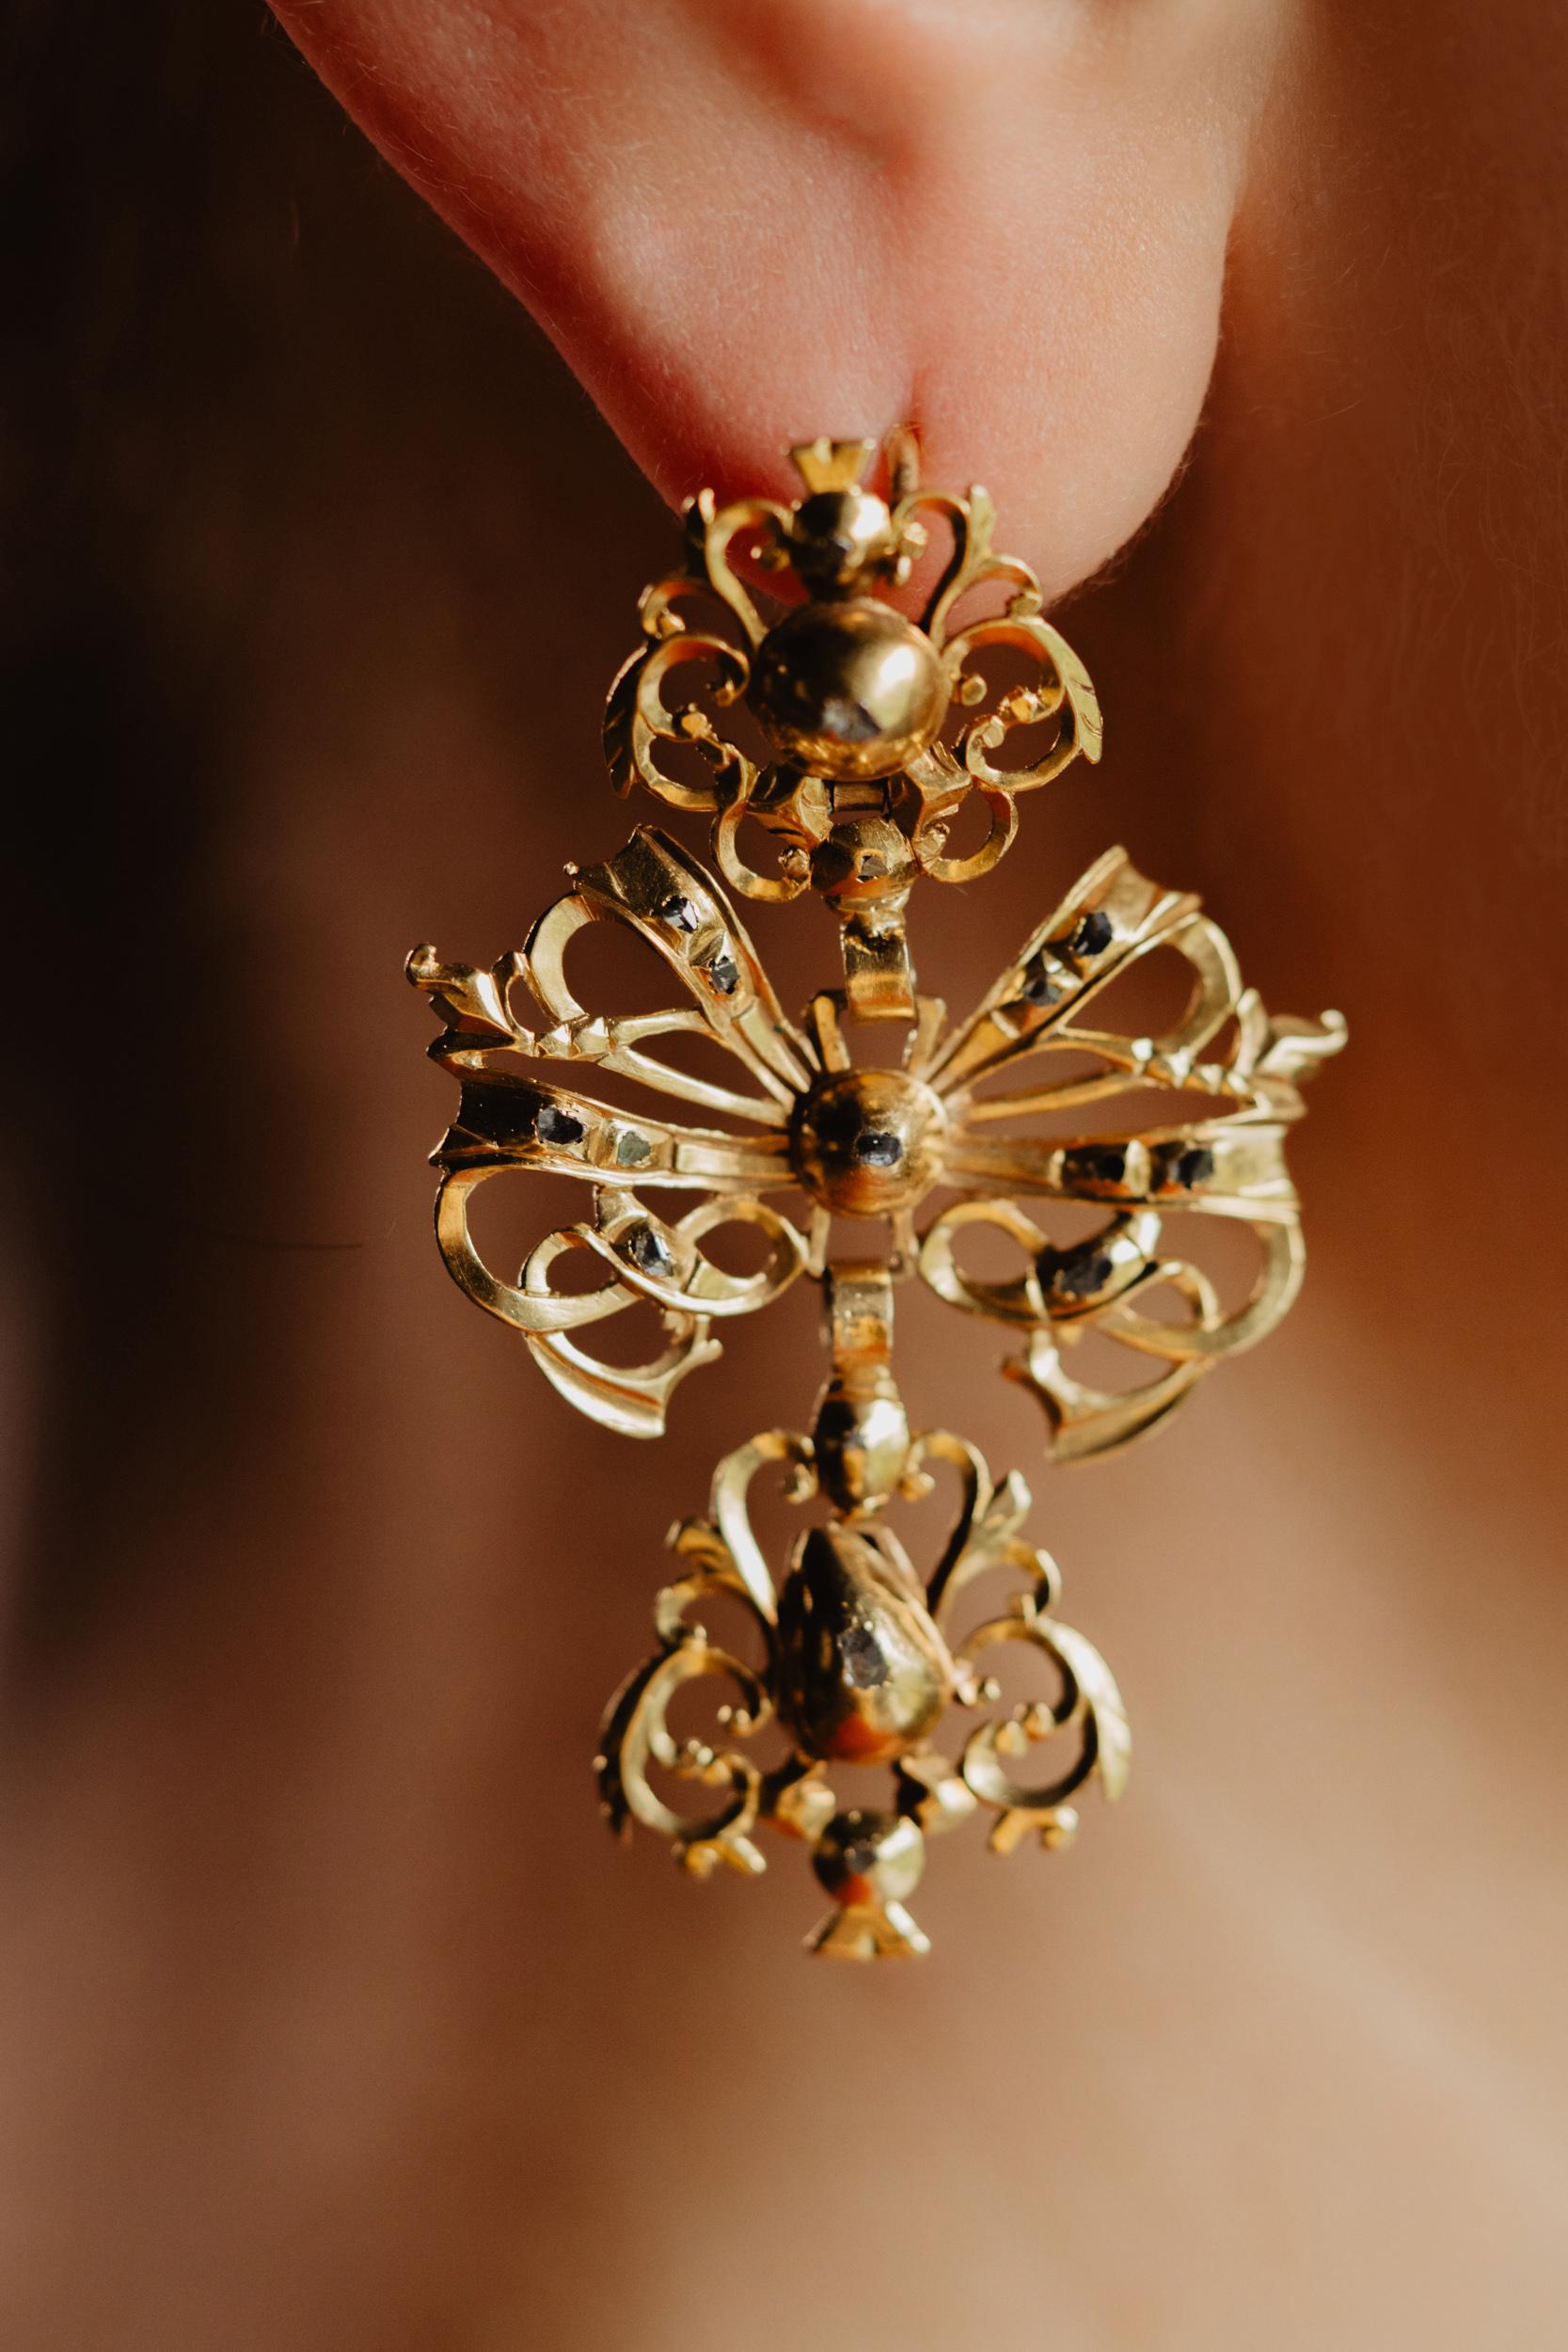 17th century earrings